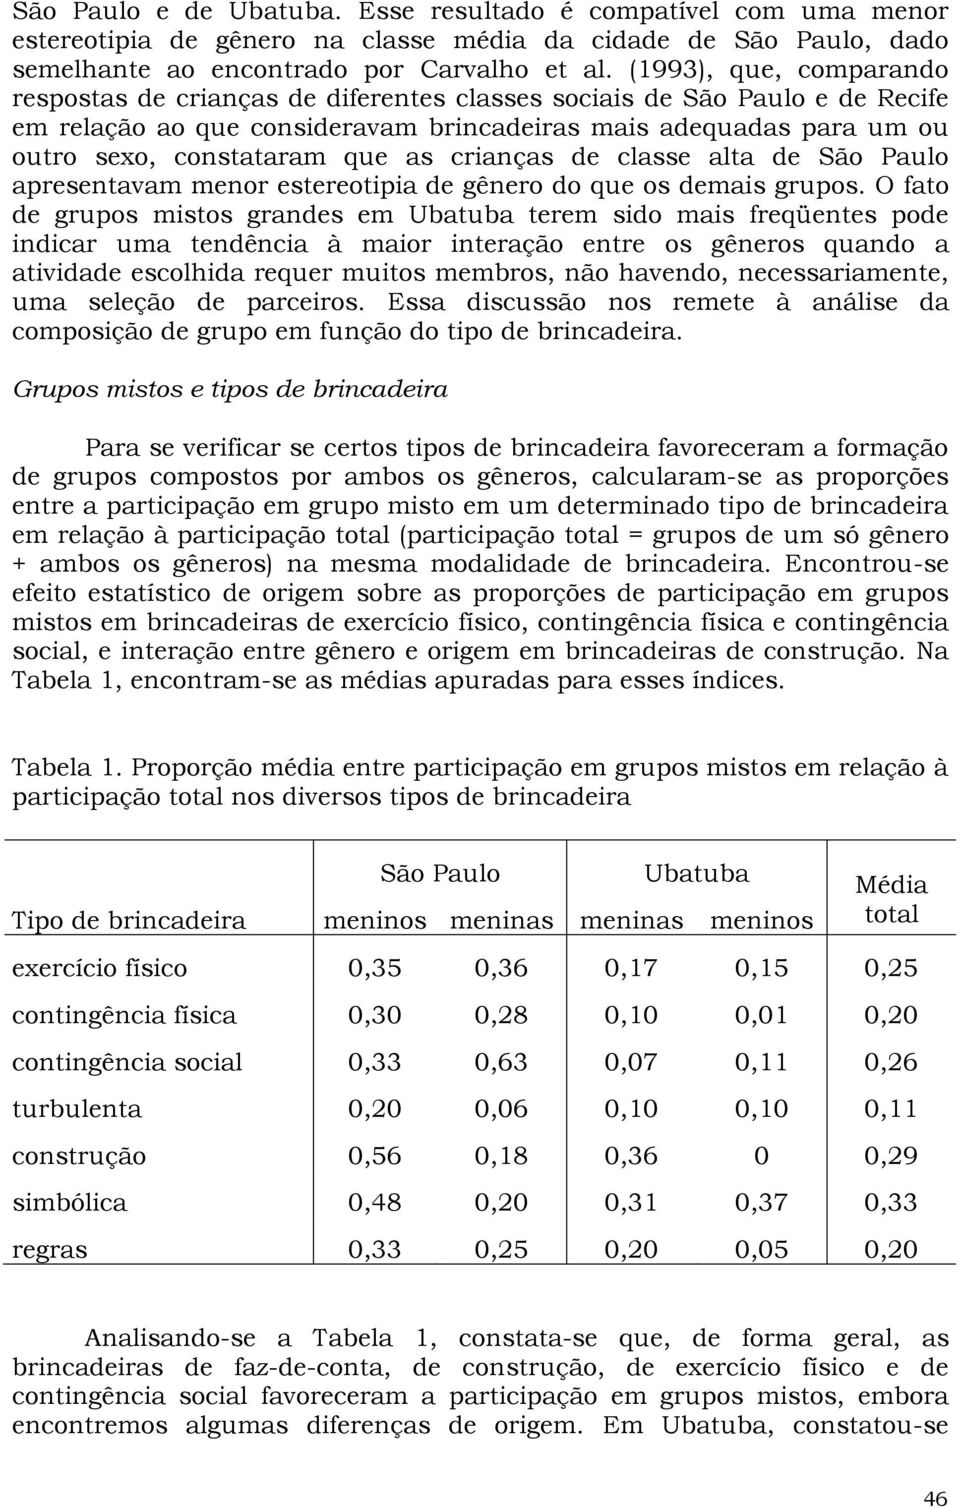 as crianças de classe alta de São Paulo apresentavam menor estereotipia de gênero do que os demais grupos.